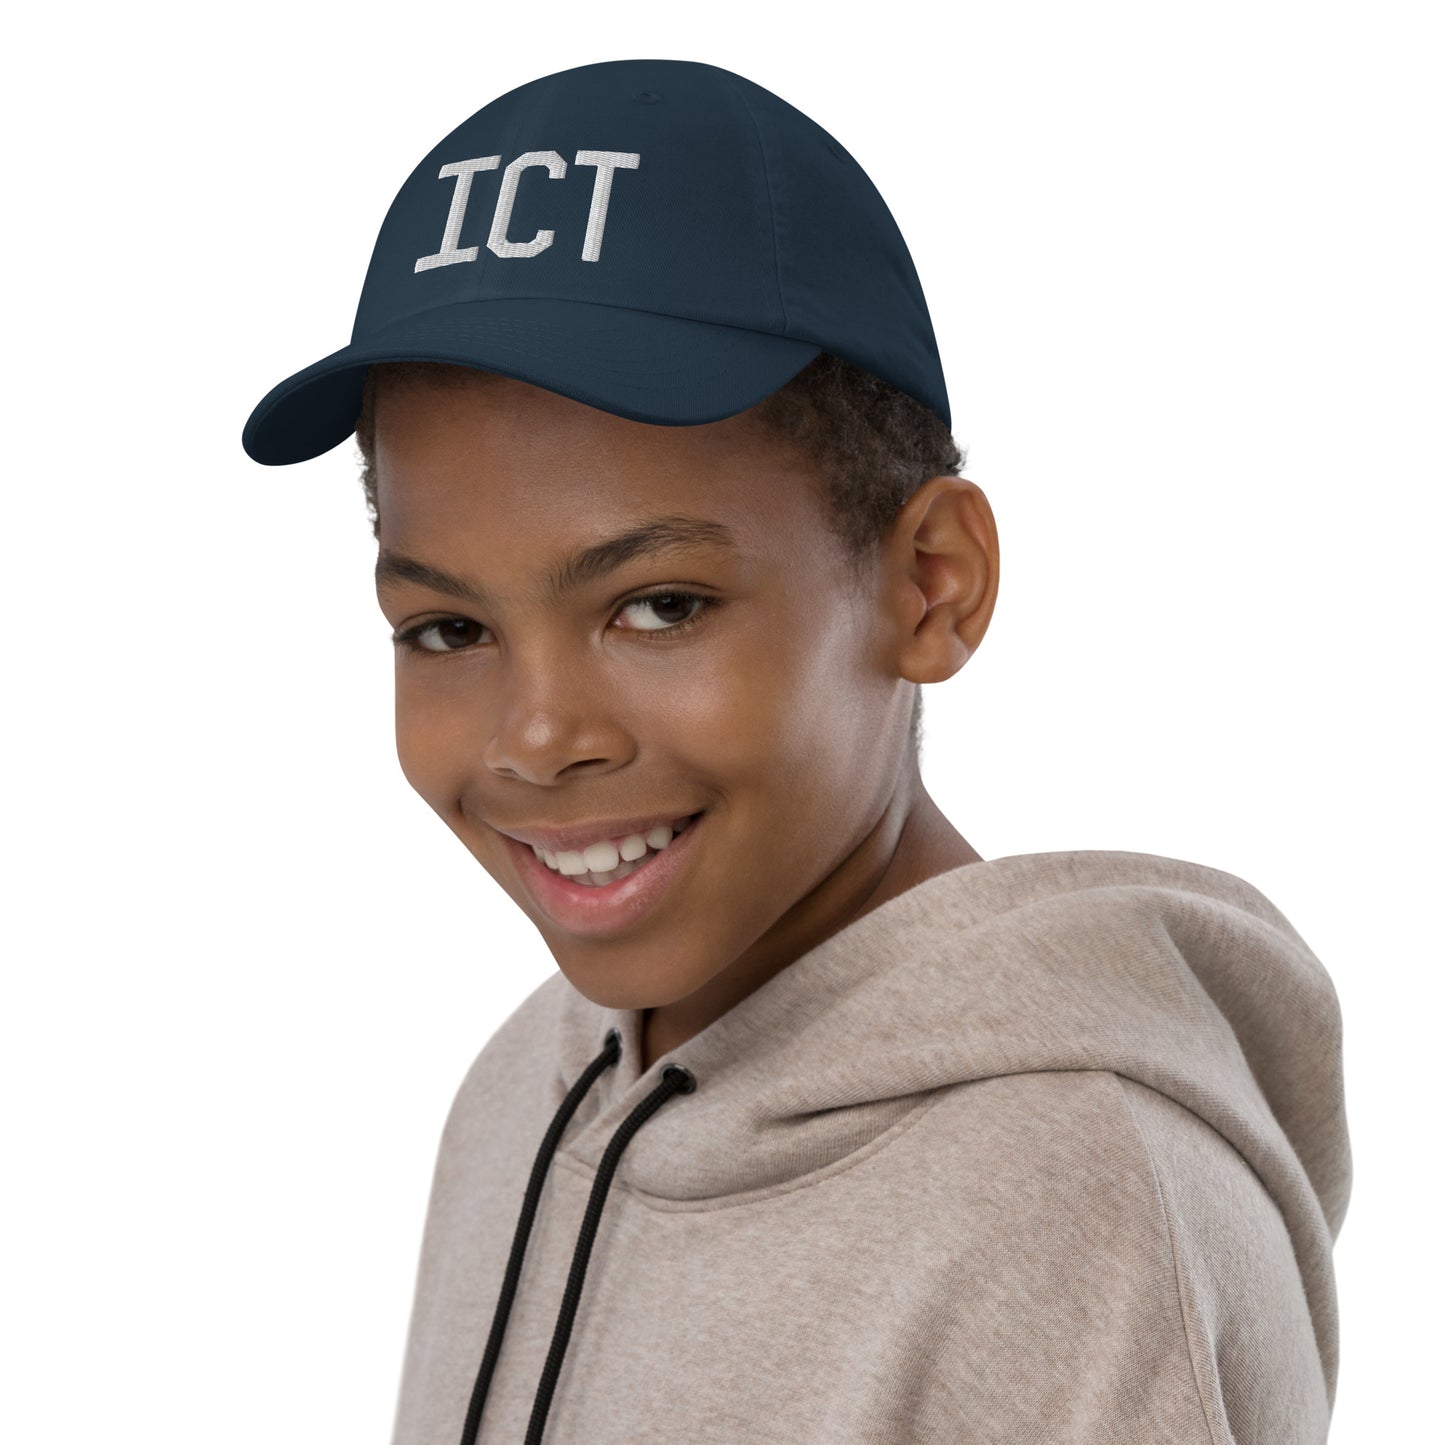 Airport Code Kid's Baseball Cap - White • ICT Wichita • YHM Designs - Image 03